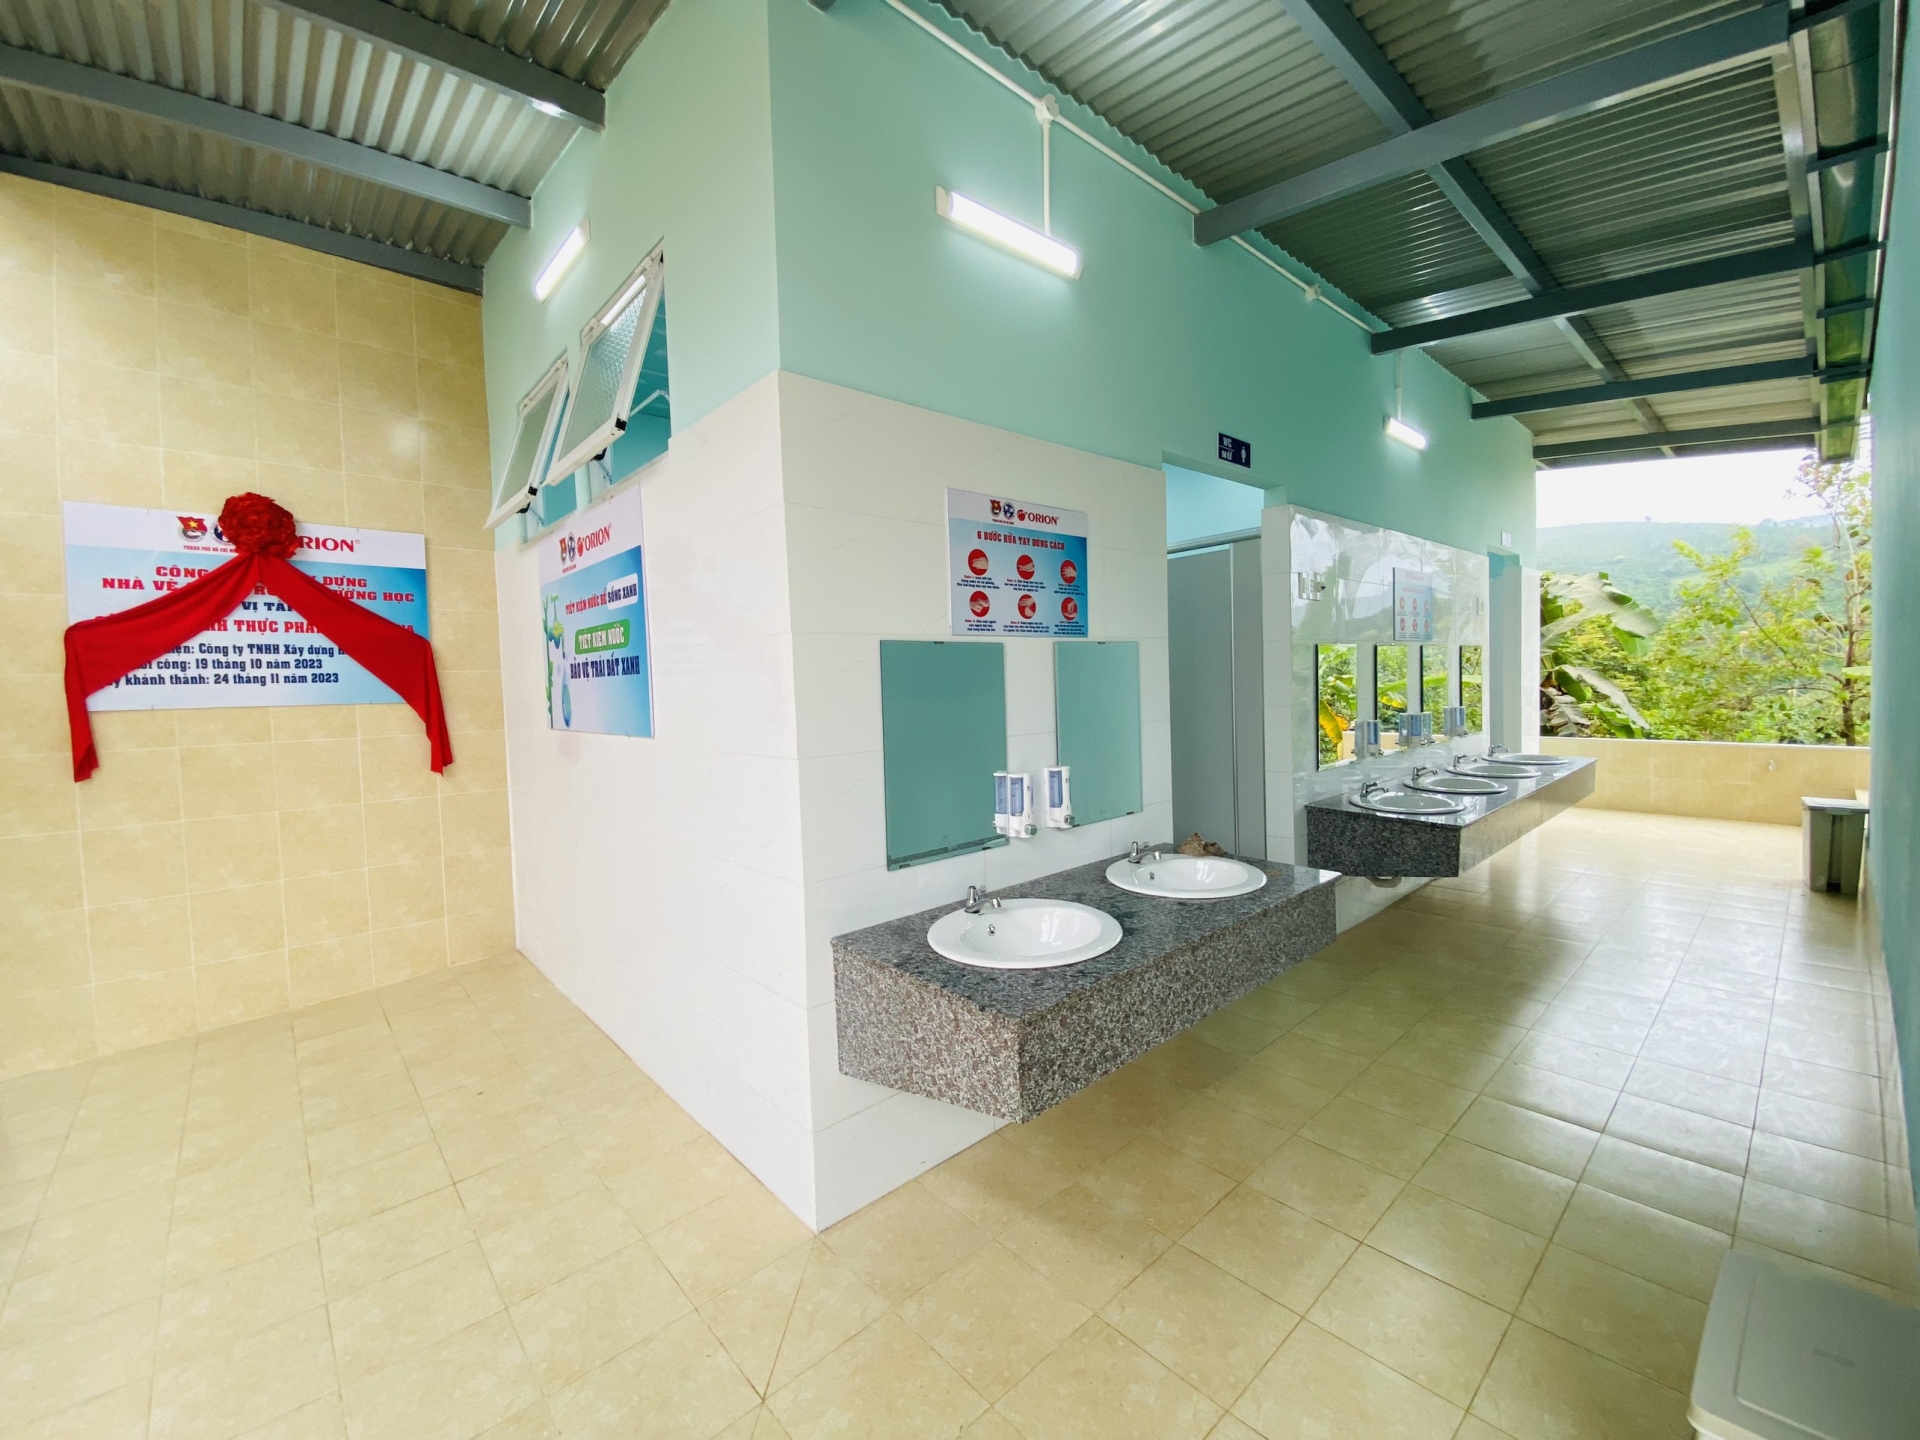 Công trình vệ sinh nhằm đảm bảo tiêu chuẩn vệ sinh mới với phương châm “Trường học thân thiện - Học sinh khoẻ mạnh”